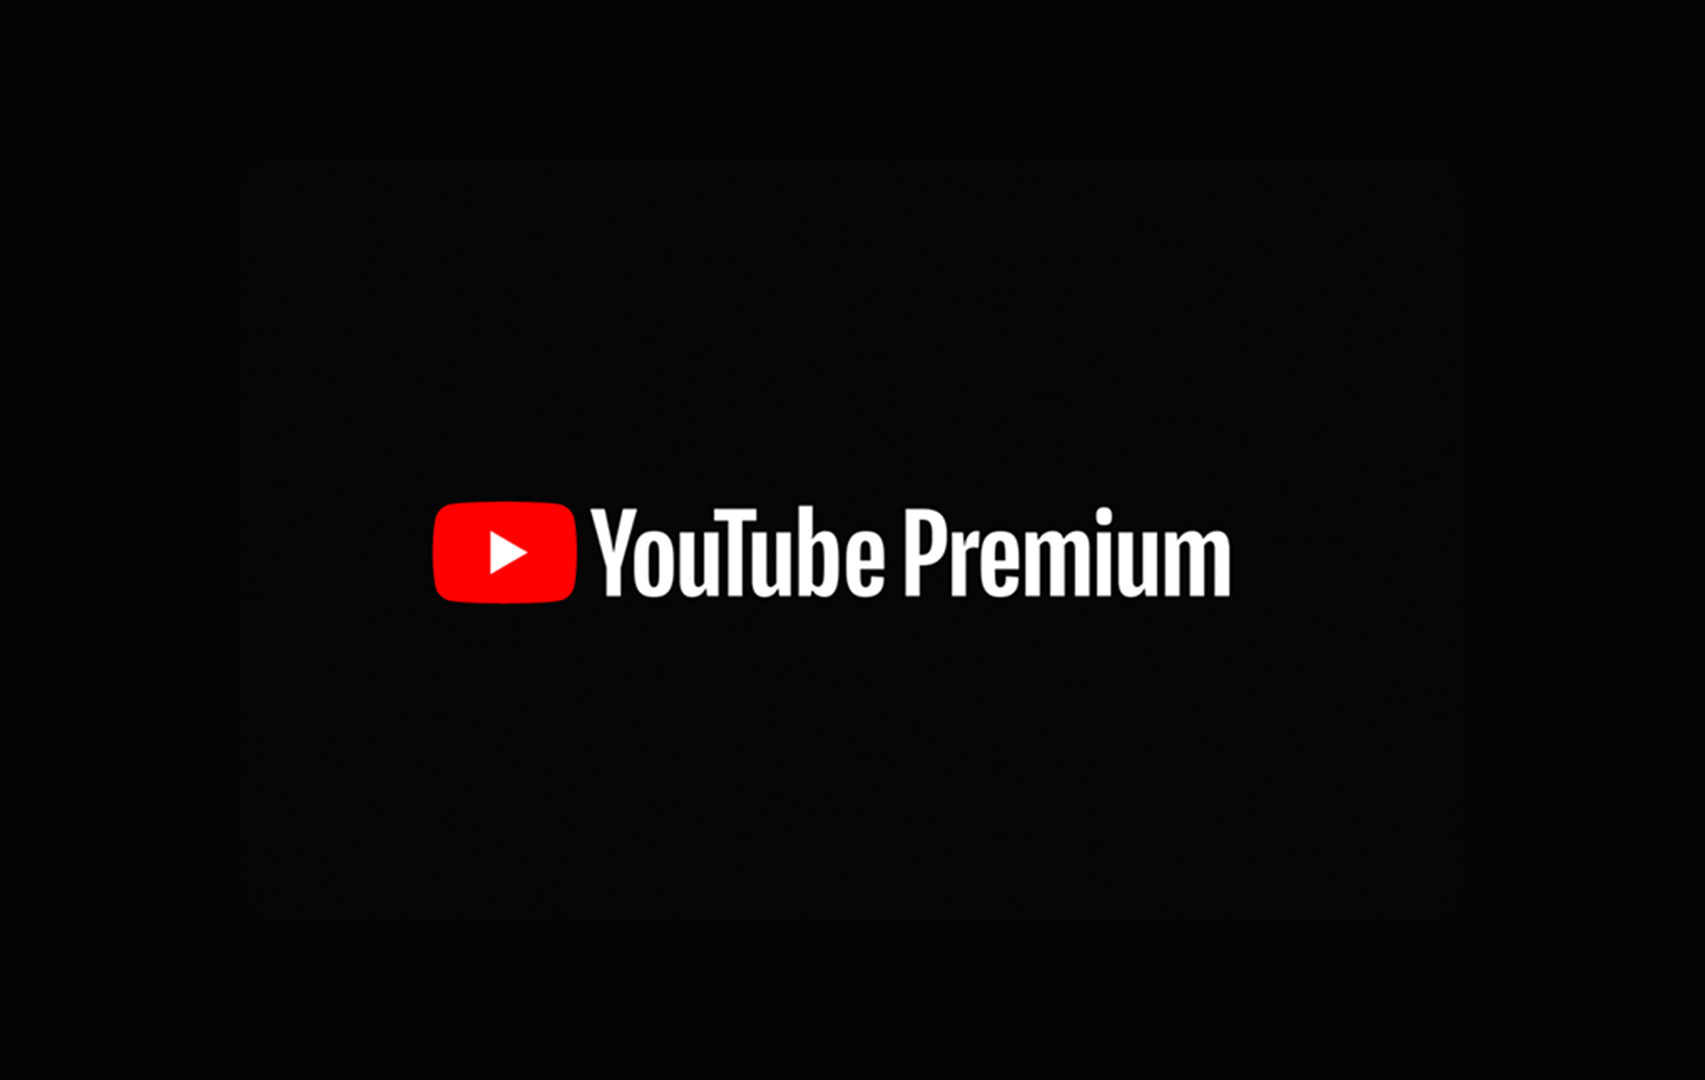 خرید یوتیوب پریمیوم 6 ماهه YouTube Premium